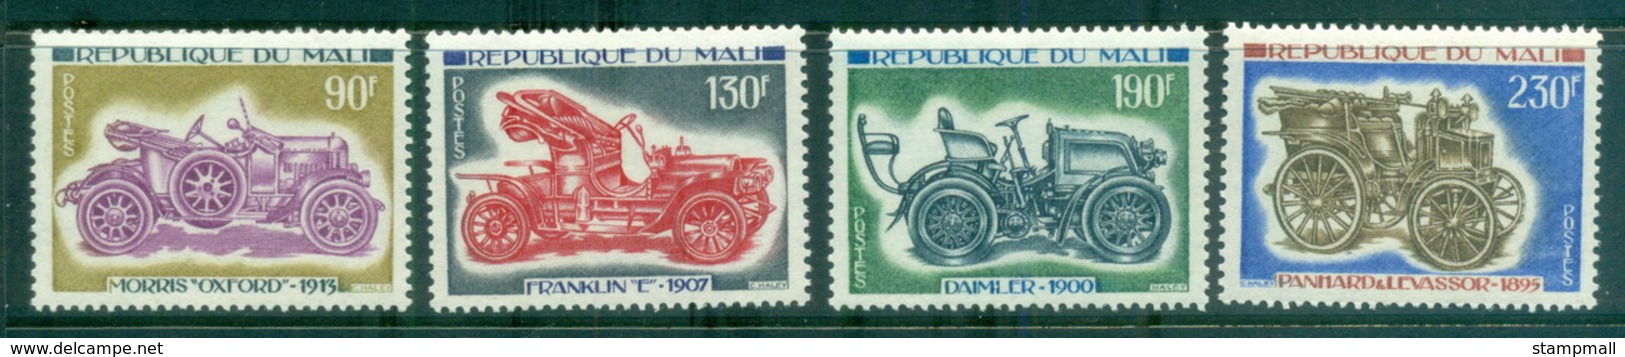 Mali 1975 Vintage Cars, Automobiles MUH - Mali (1959-...)